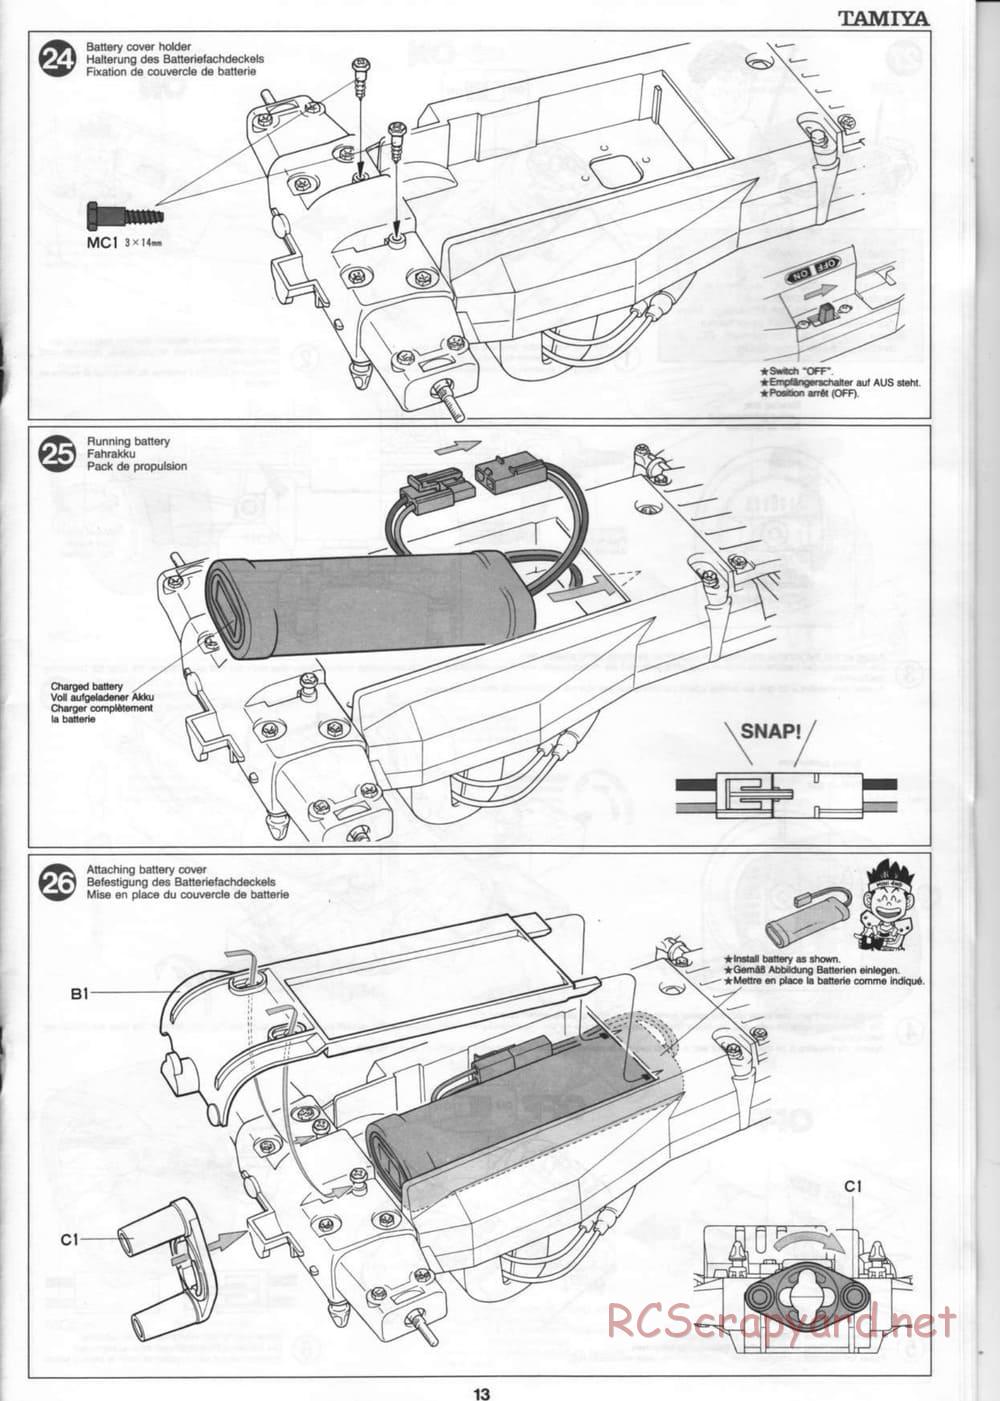 Tamiya - Thunder Blitz - Boy's 4WD Chassis - Manual - Page 13